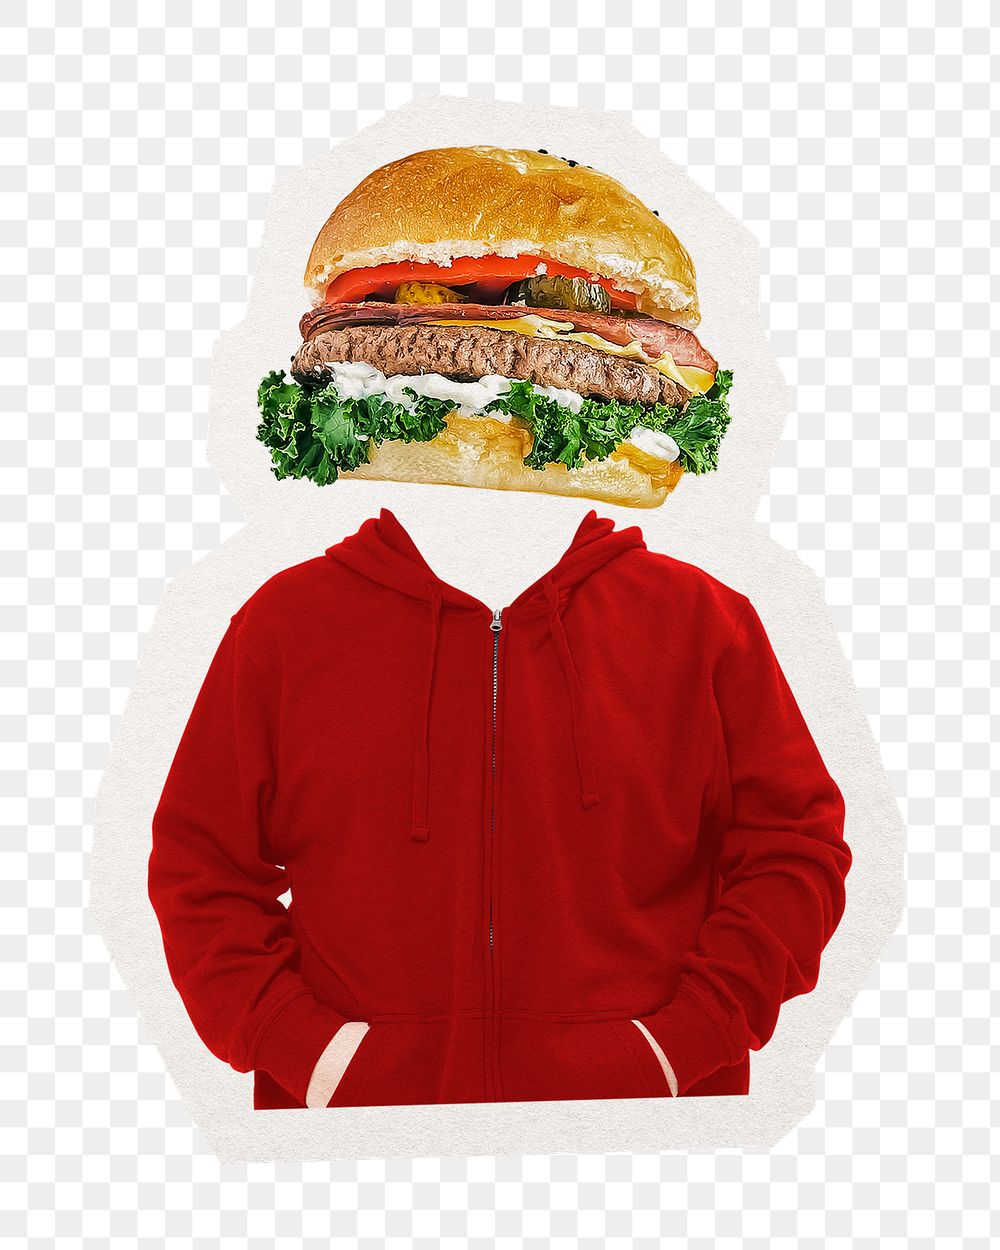 Burger head png man, junk food remixed media, transparent background